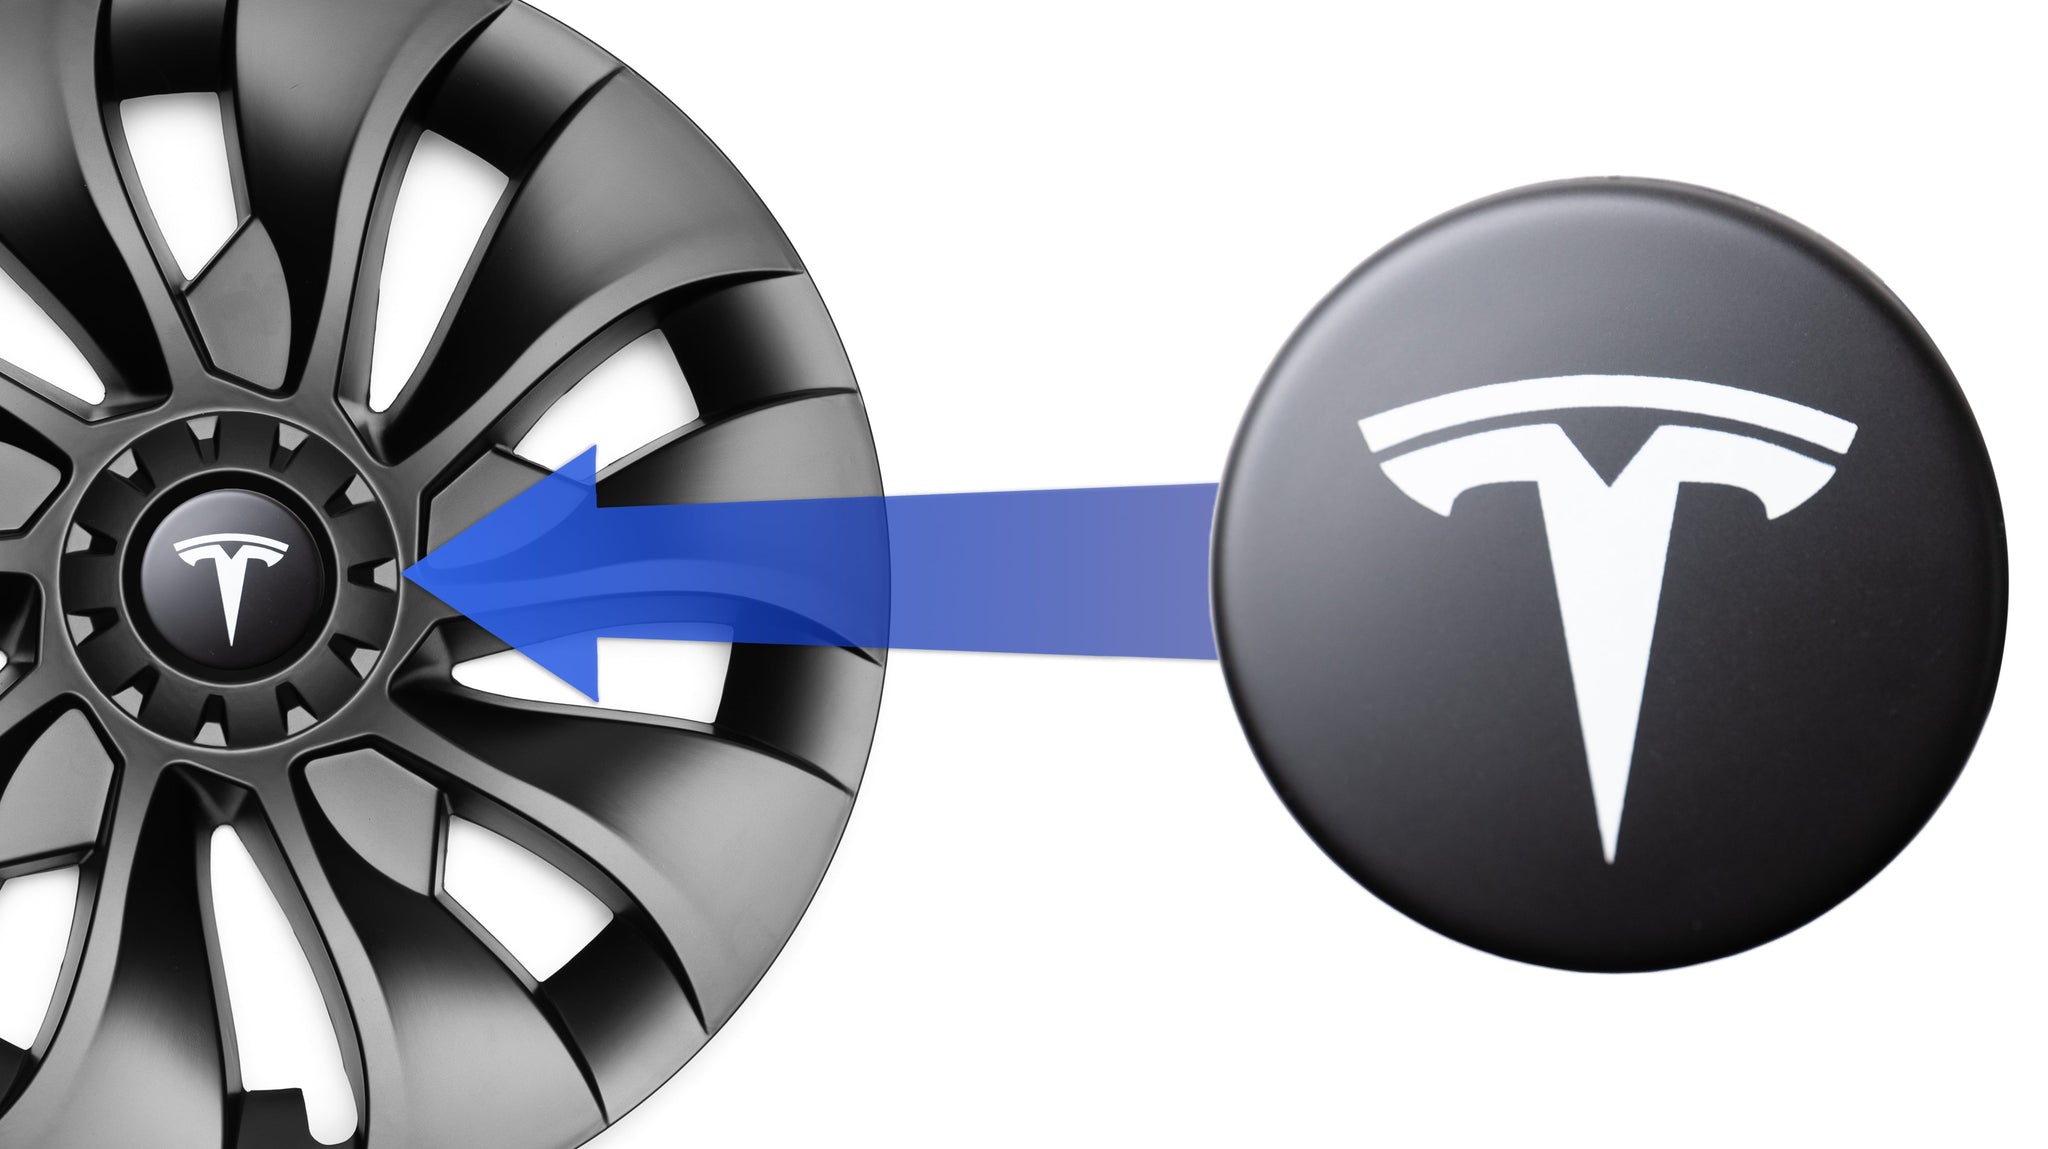 2befair Lackschutzfolien für Einstiegsleisten des Tesla Model Y